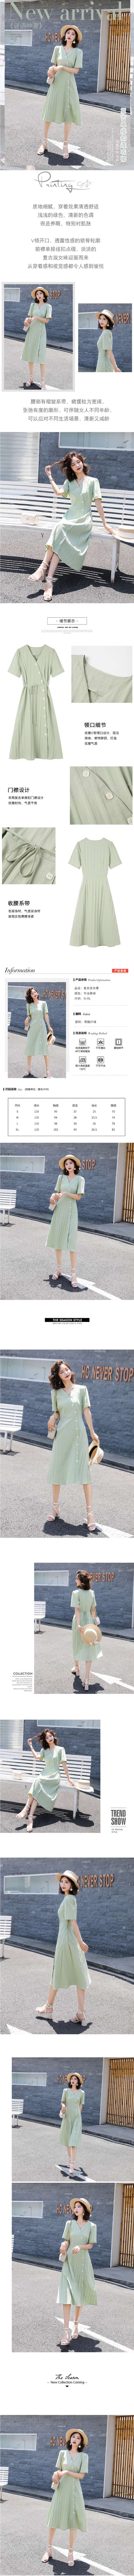 淘宝美工y1891382019新款女装夏装韩范连衣裙作品